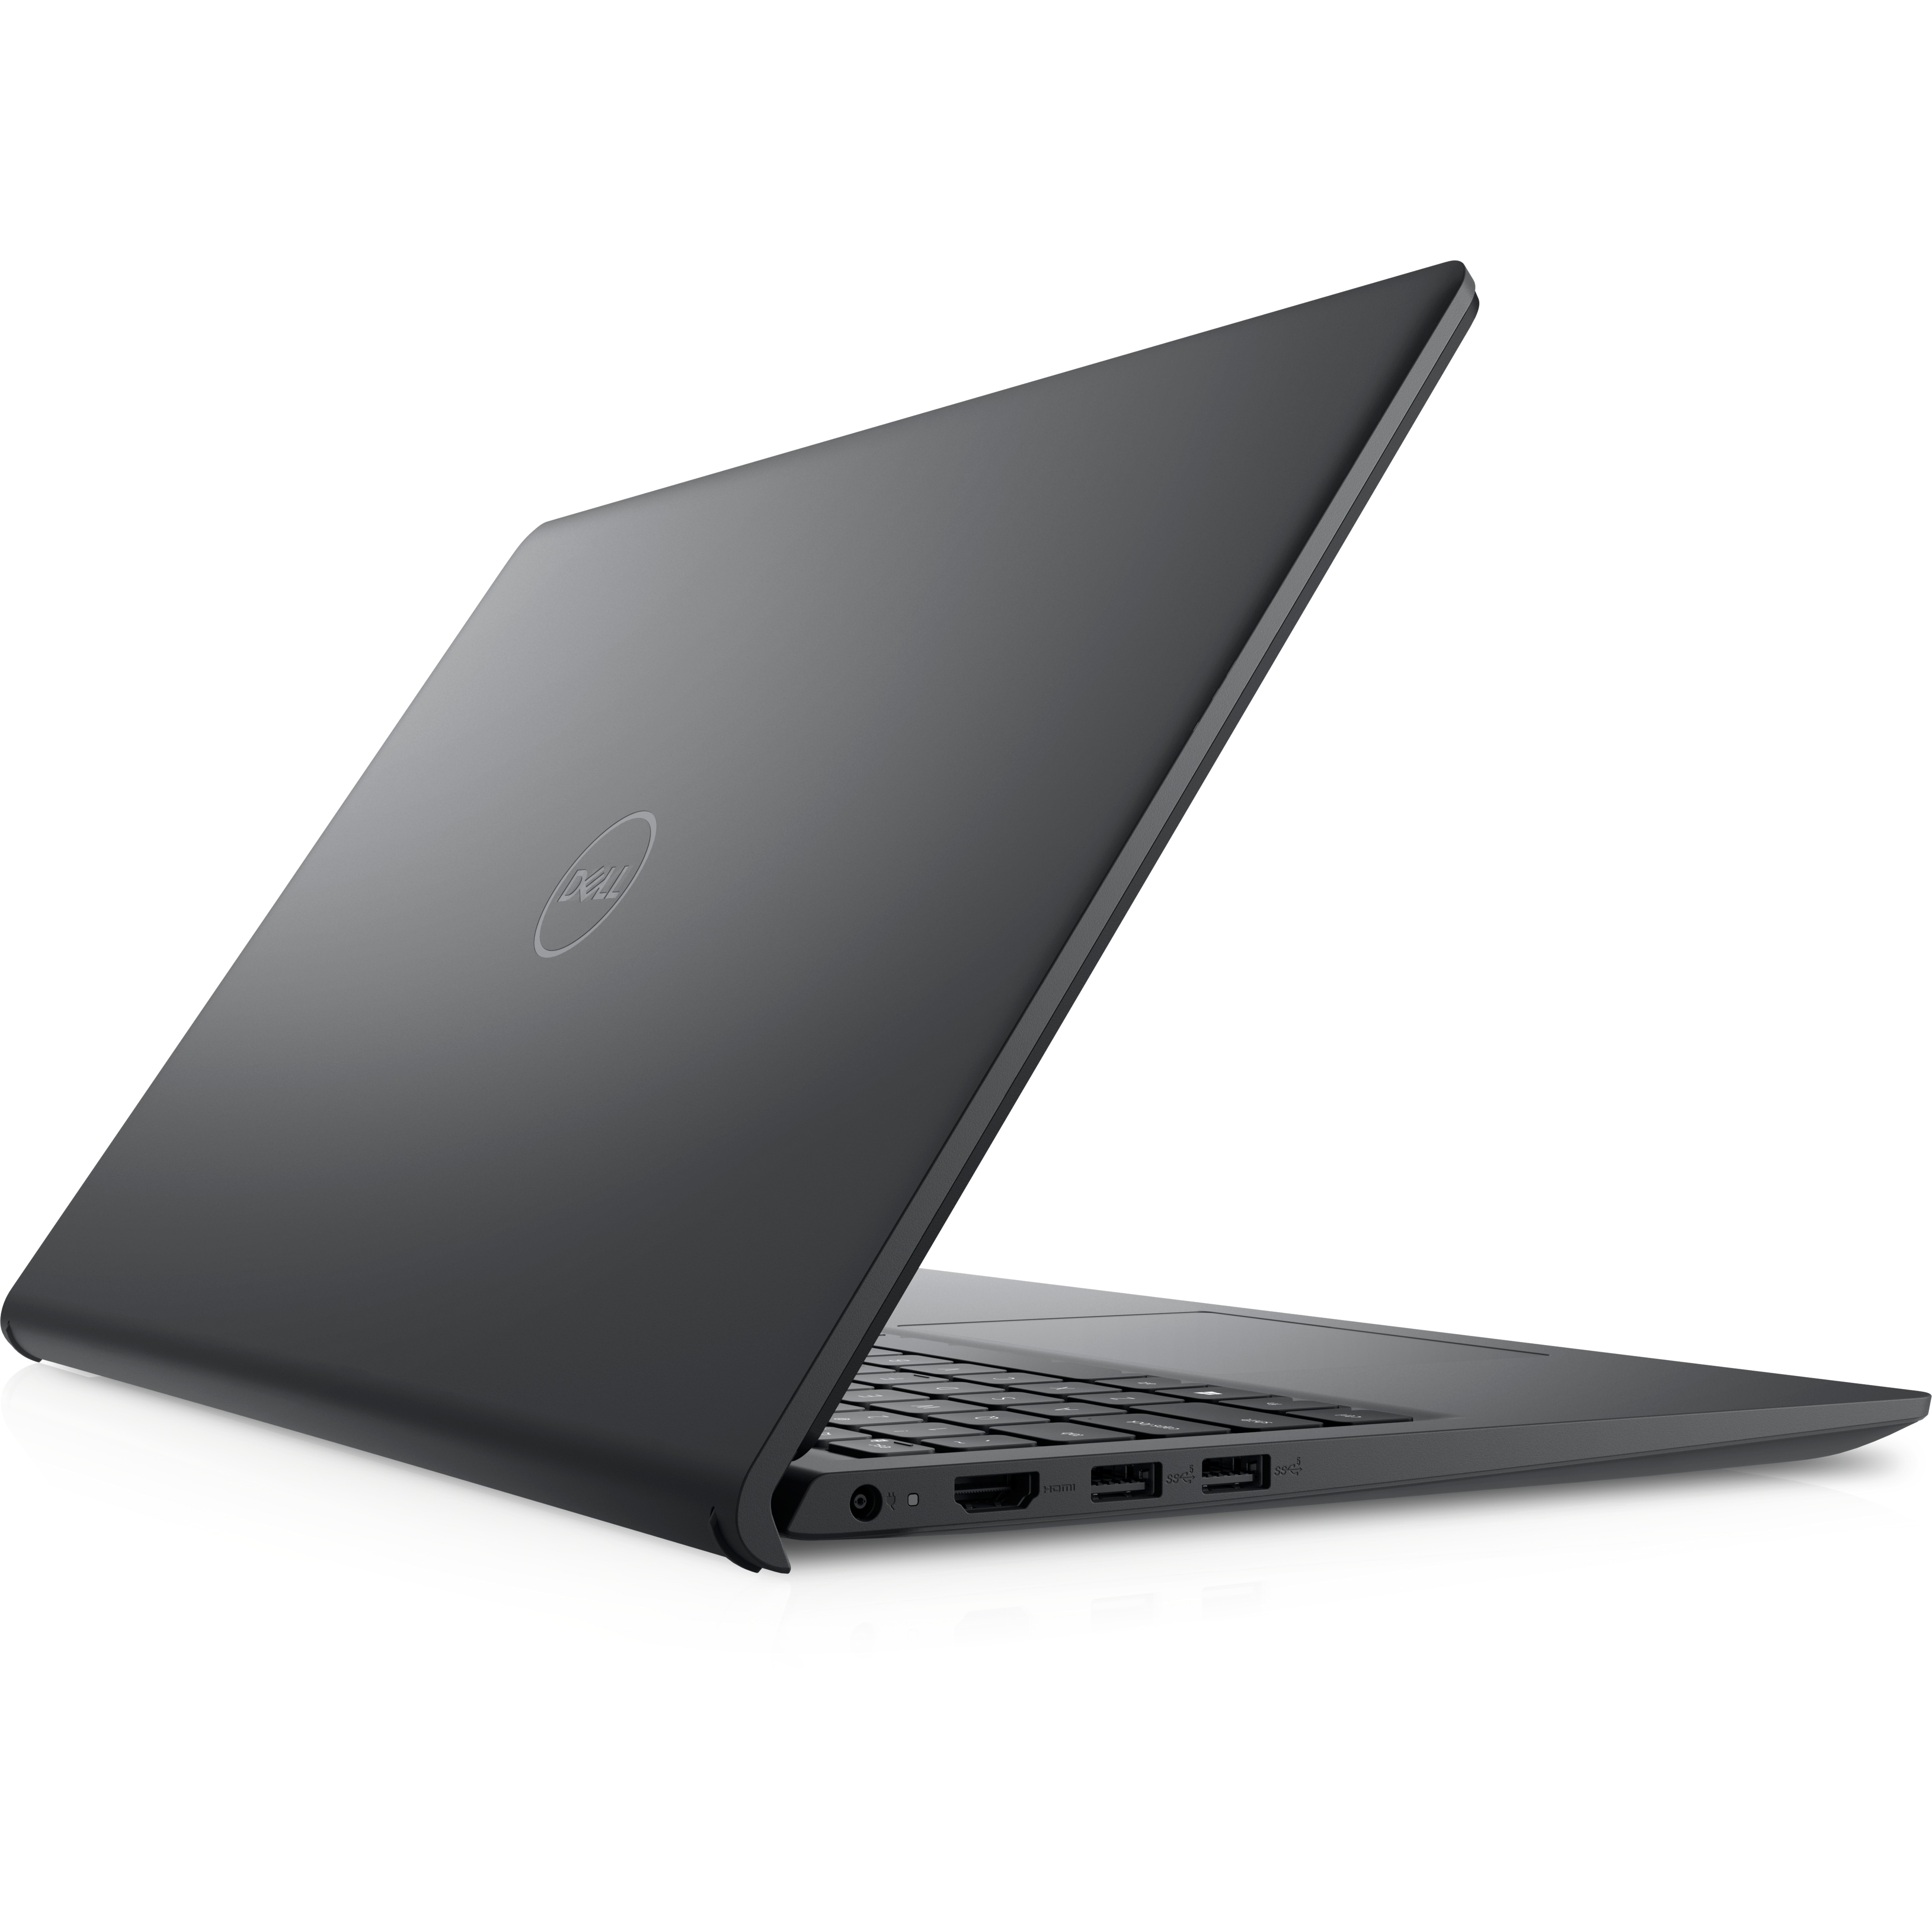 Notebook inspiron em promoção Dell preto virado para trás e para a direita